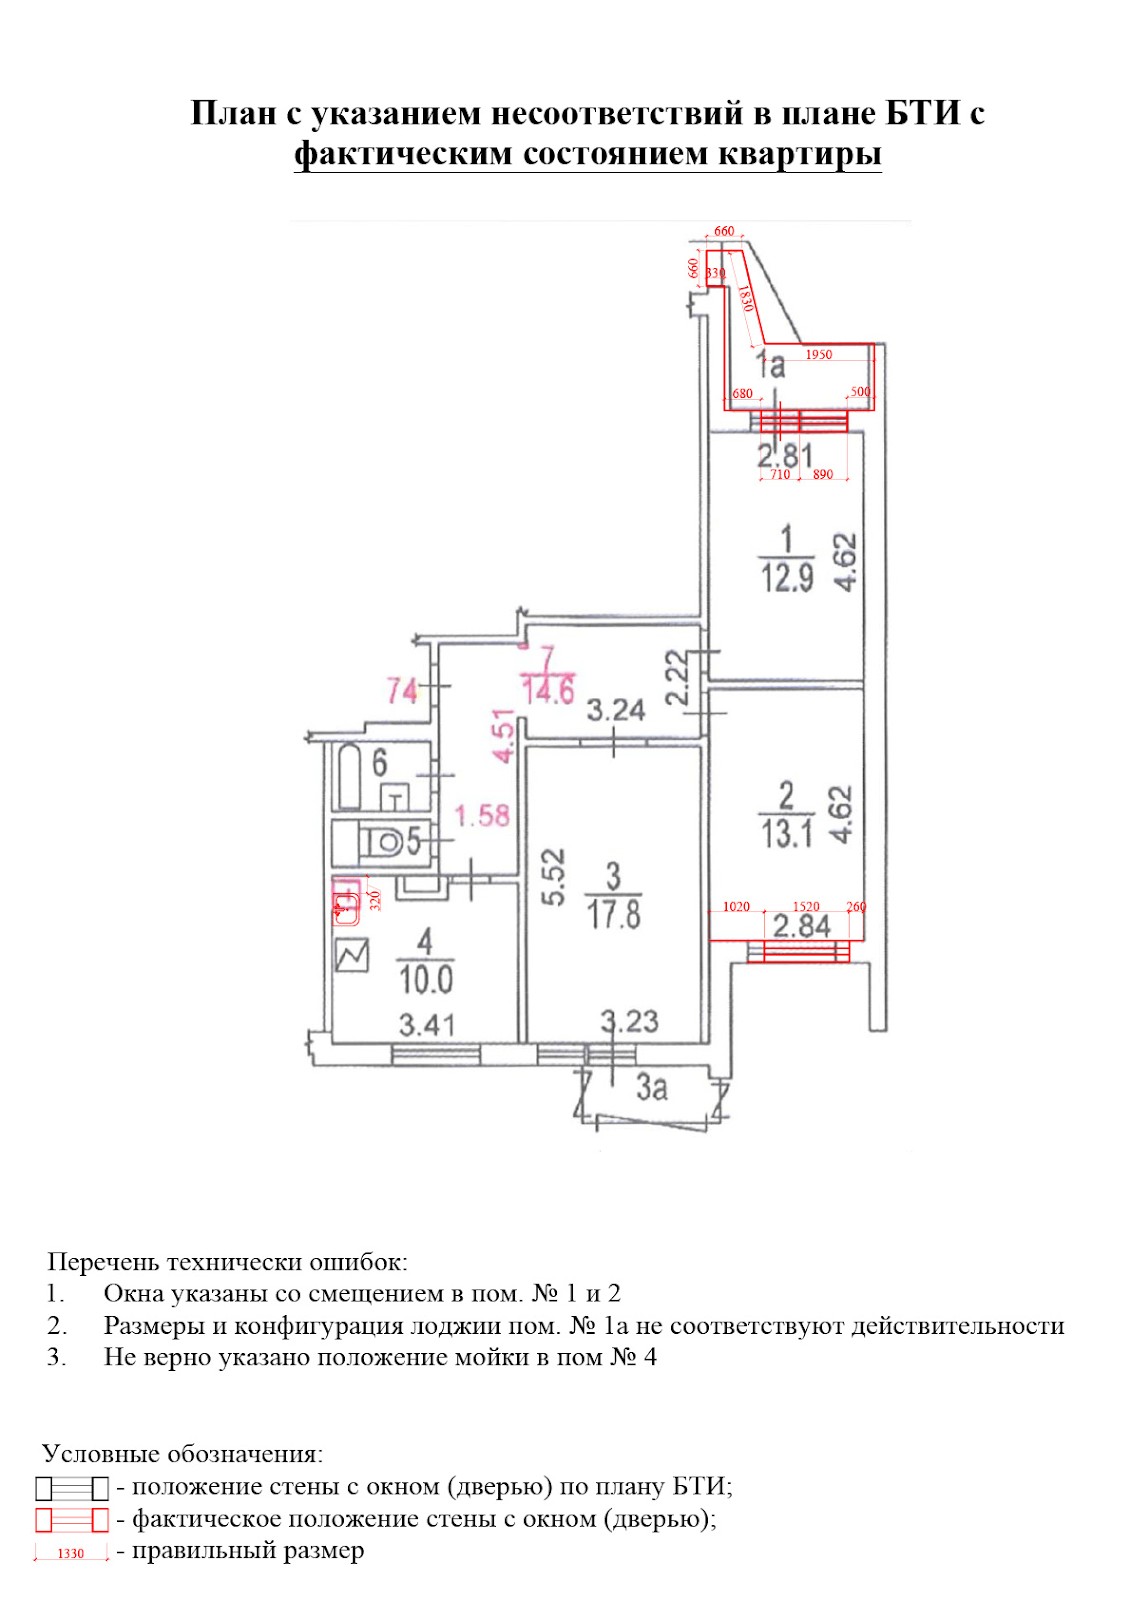 Поэтажный план квартиры БТИ